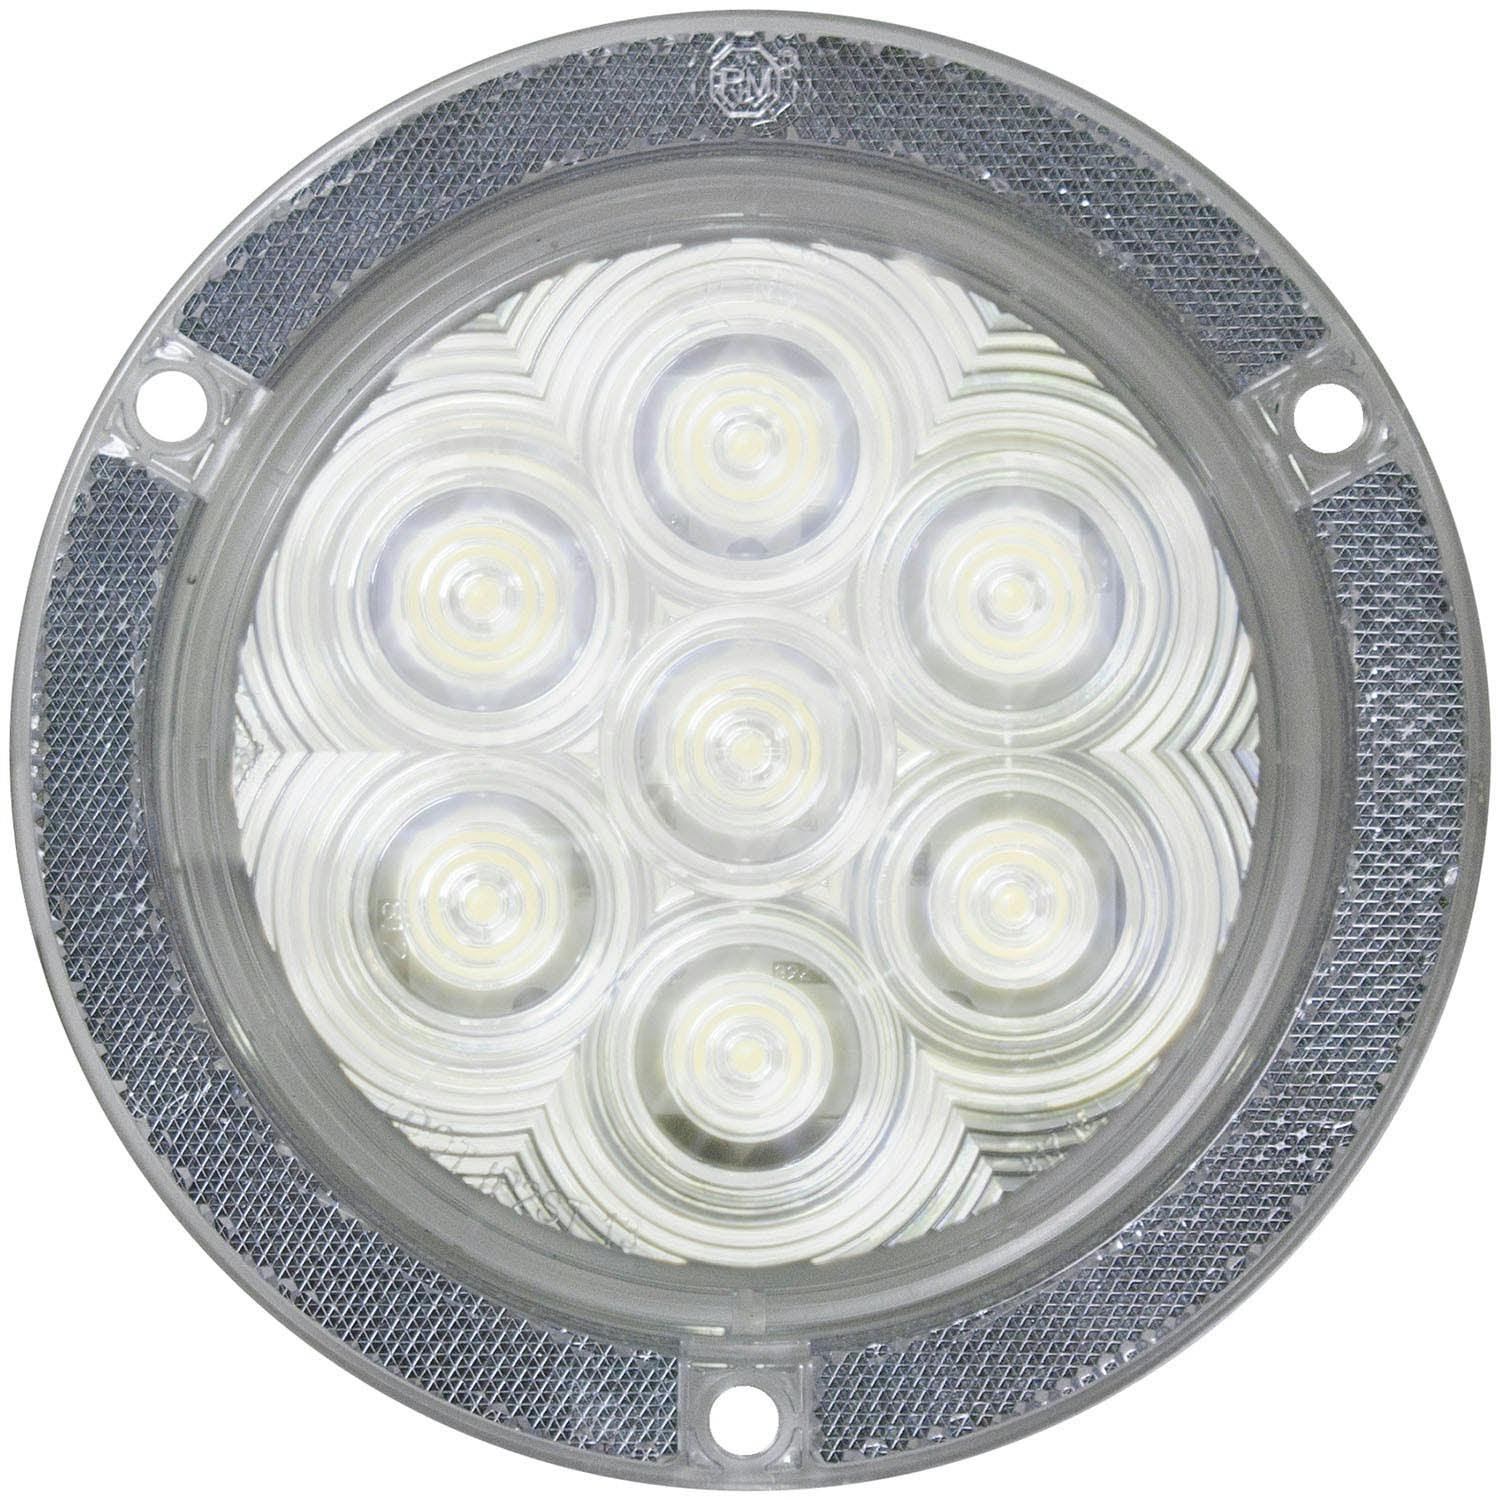 LED Back-Up Light, Round, w/ Reflex, Flange-Mount 4", white, bulk pack (Pack of 50)